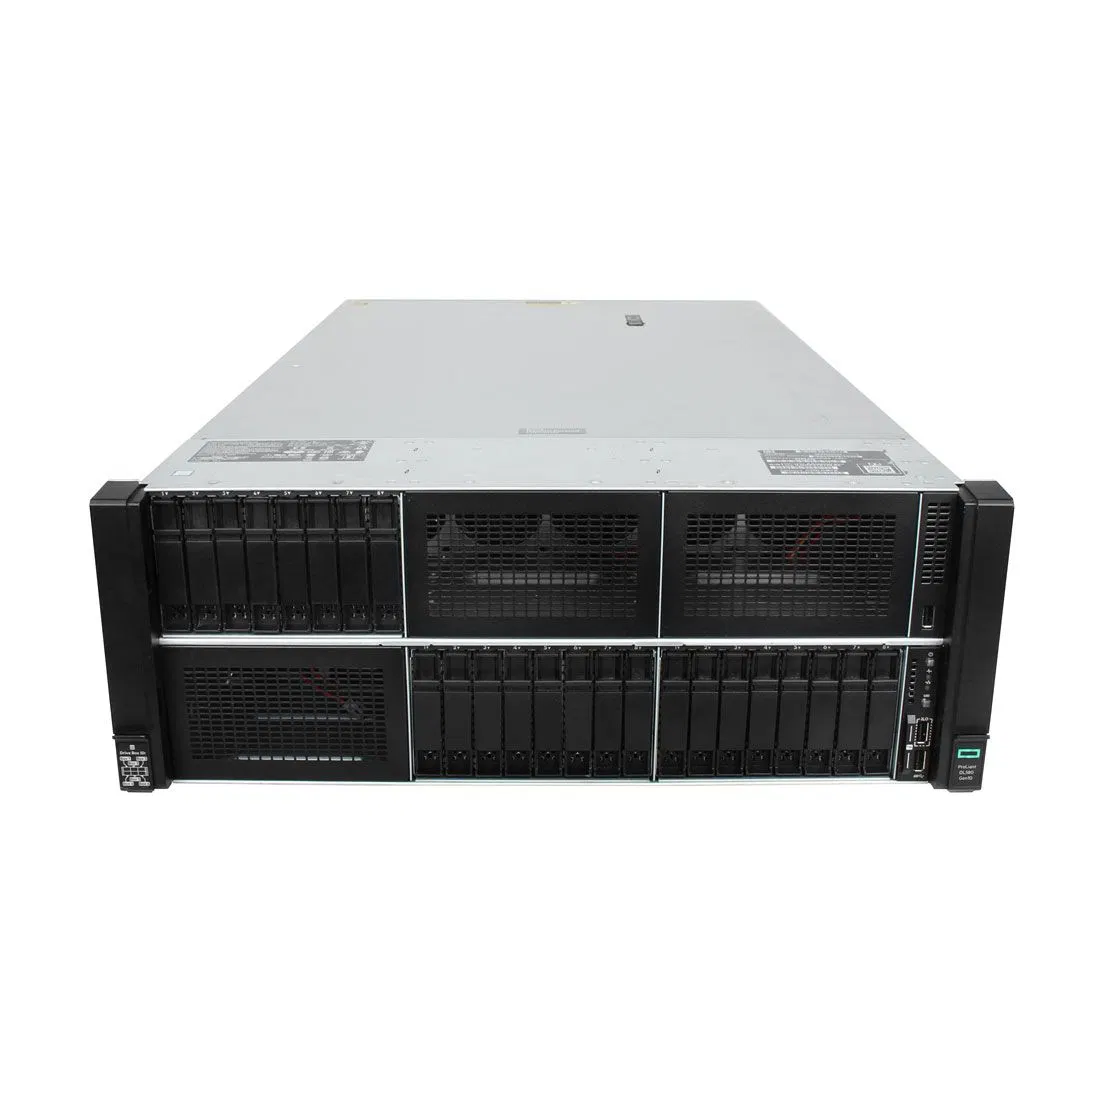 Hpe equipo servidor de la OIT la configuración personalizada de los servidores en rack popular en toda la red Hpe Proliant DL580 Gen10 Servidor 4U